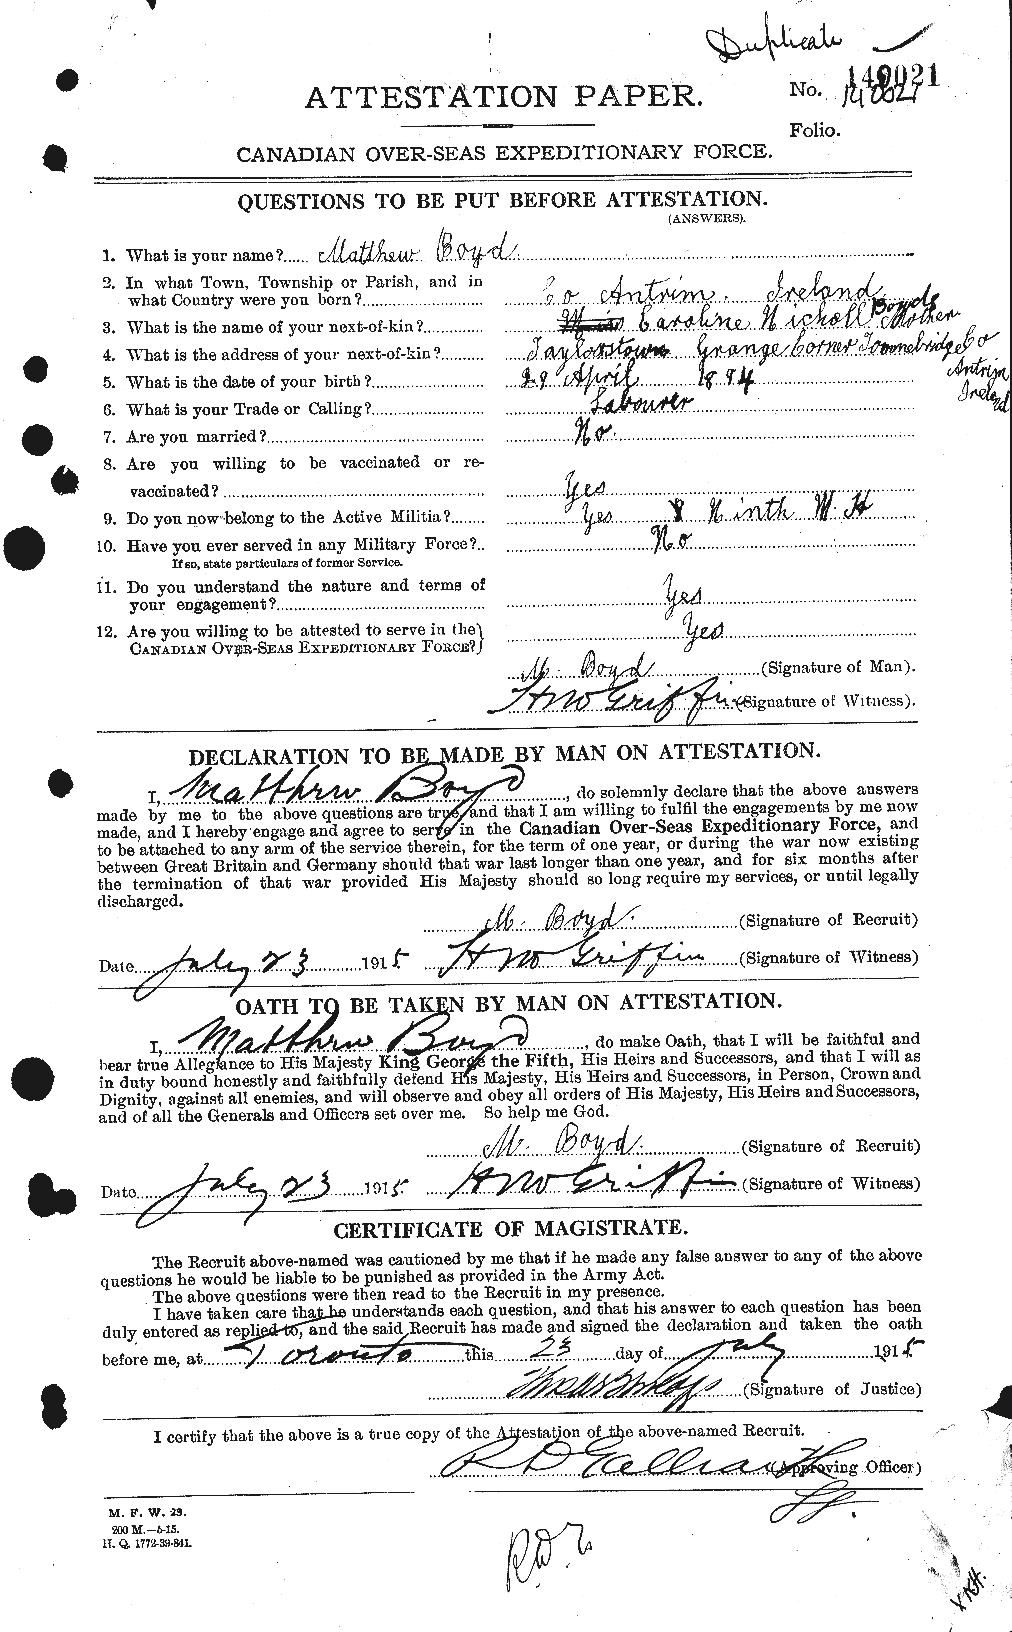 Dossiers du Personnel de la Première Guerre mondiale - CEC 257046a